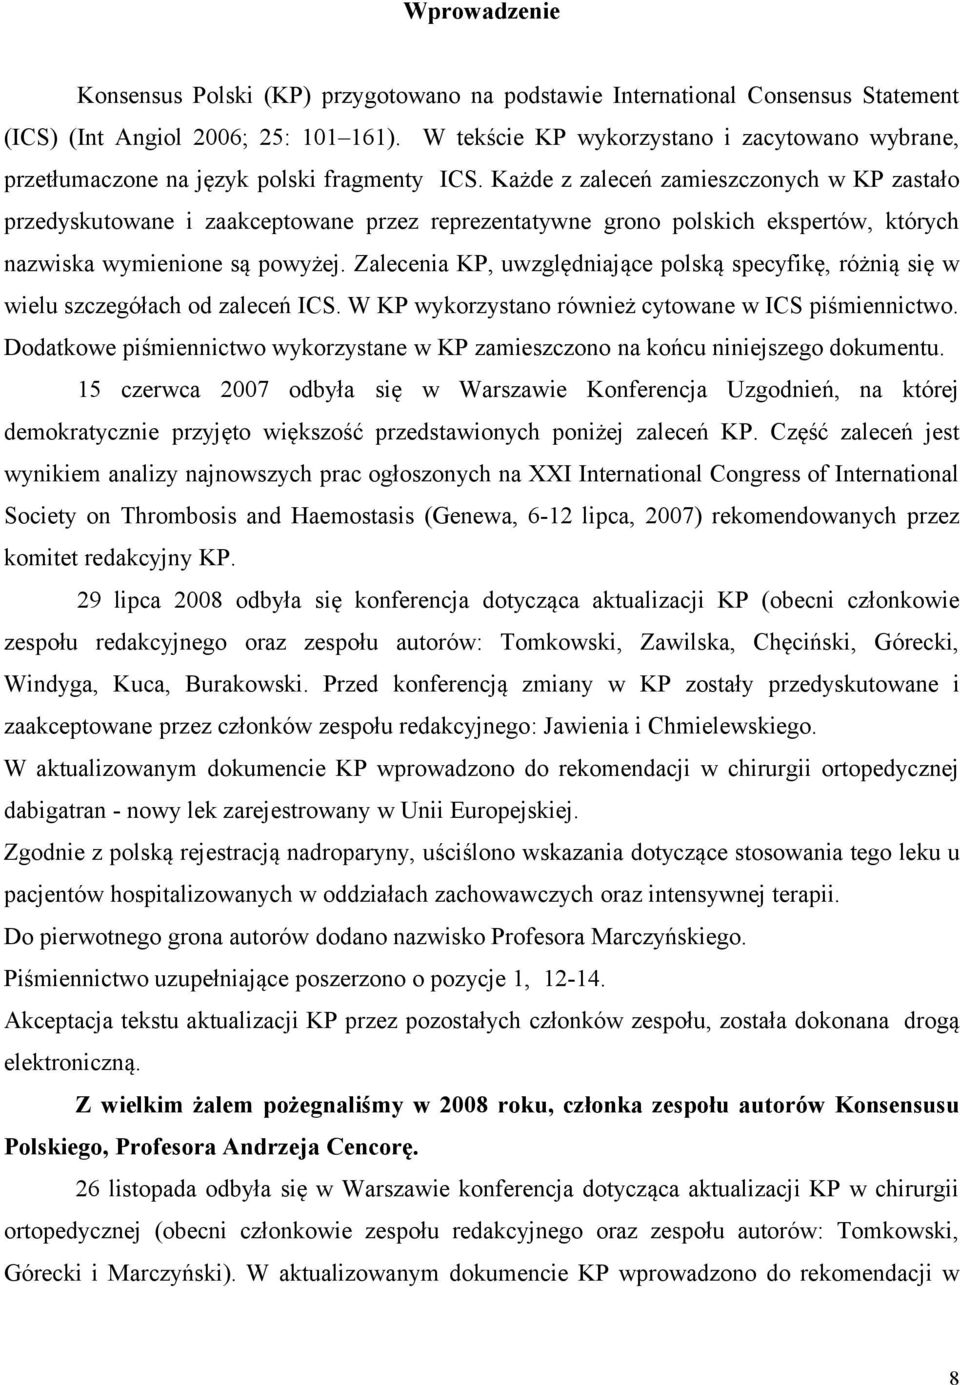 Każde z zaleceń zamieszczonych w KP zastało przedyskutowane i zaakceptowane przez reprezentatywne grono polskich ekspertów, których nazwiska wymienione są powyżej.